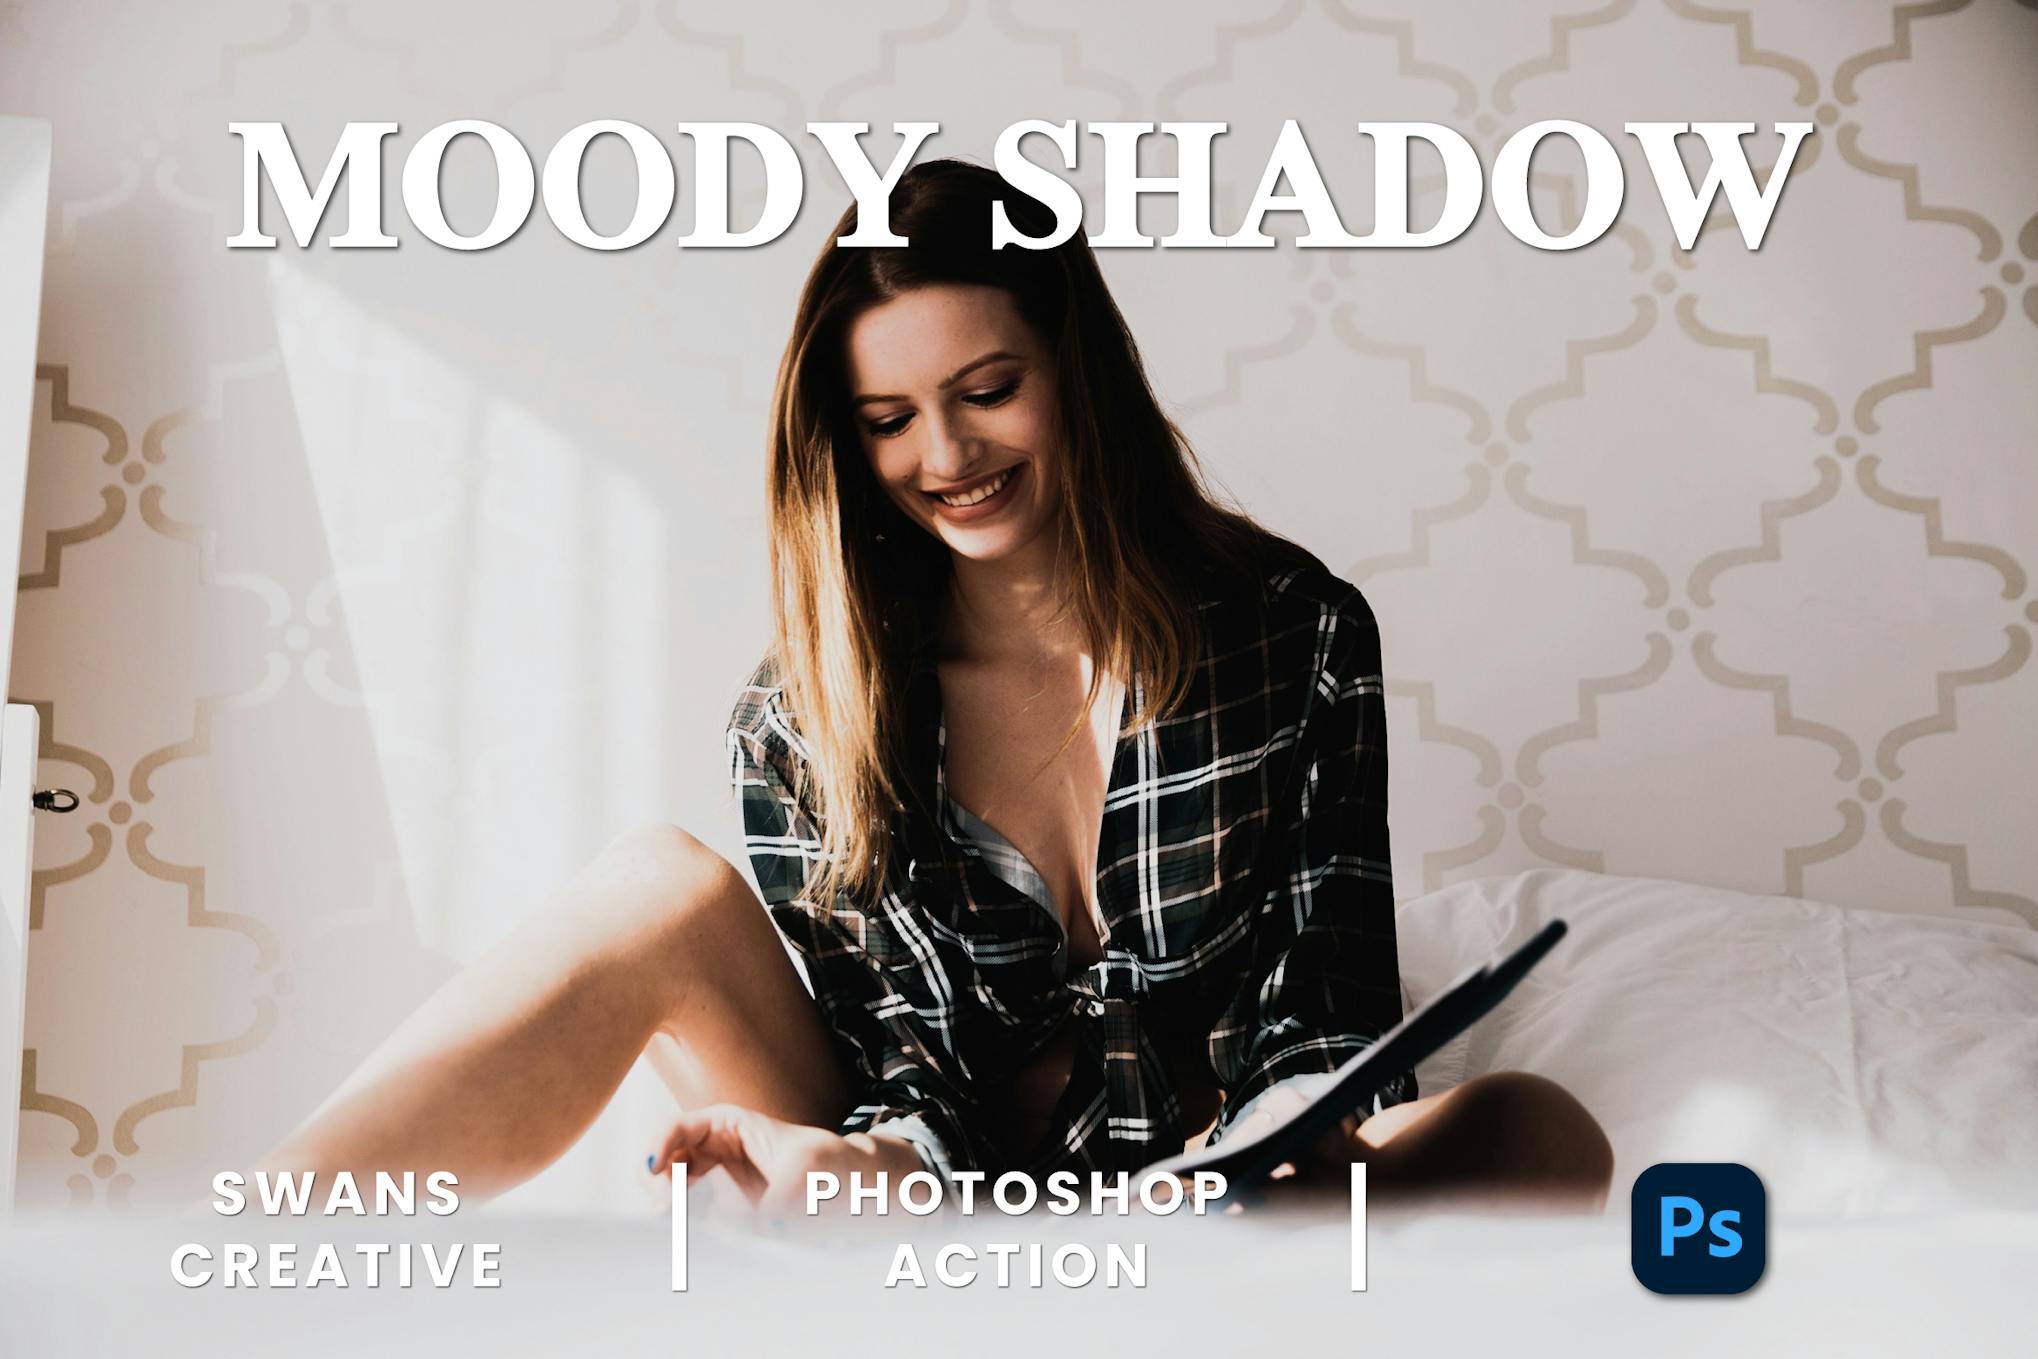 Stimmungsvolle Schatten-Photoshop-Aktion